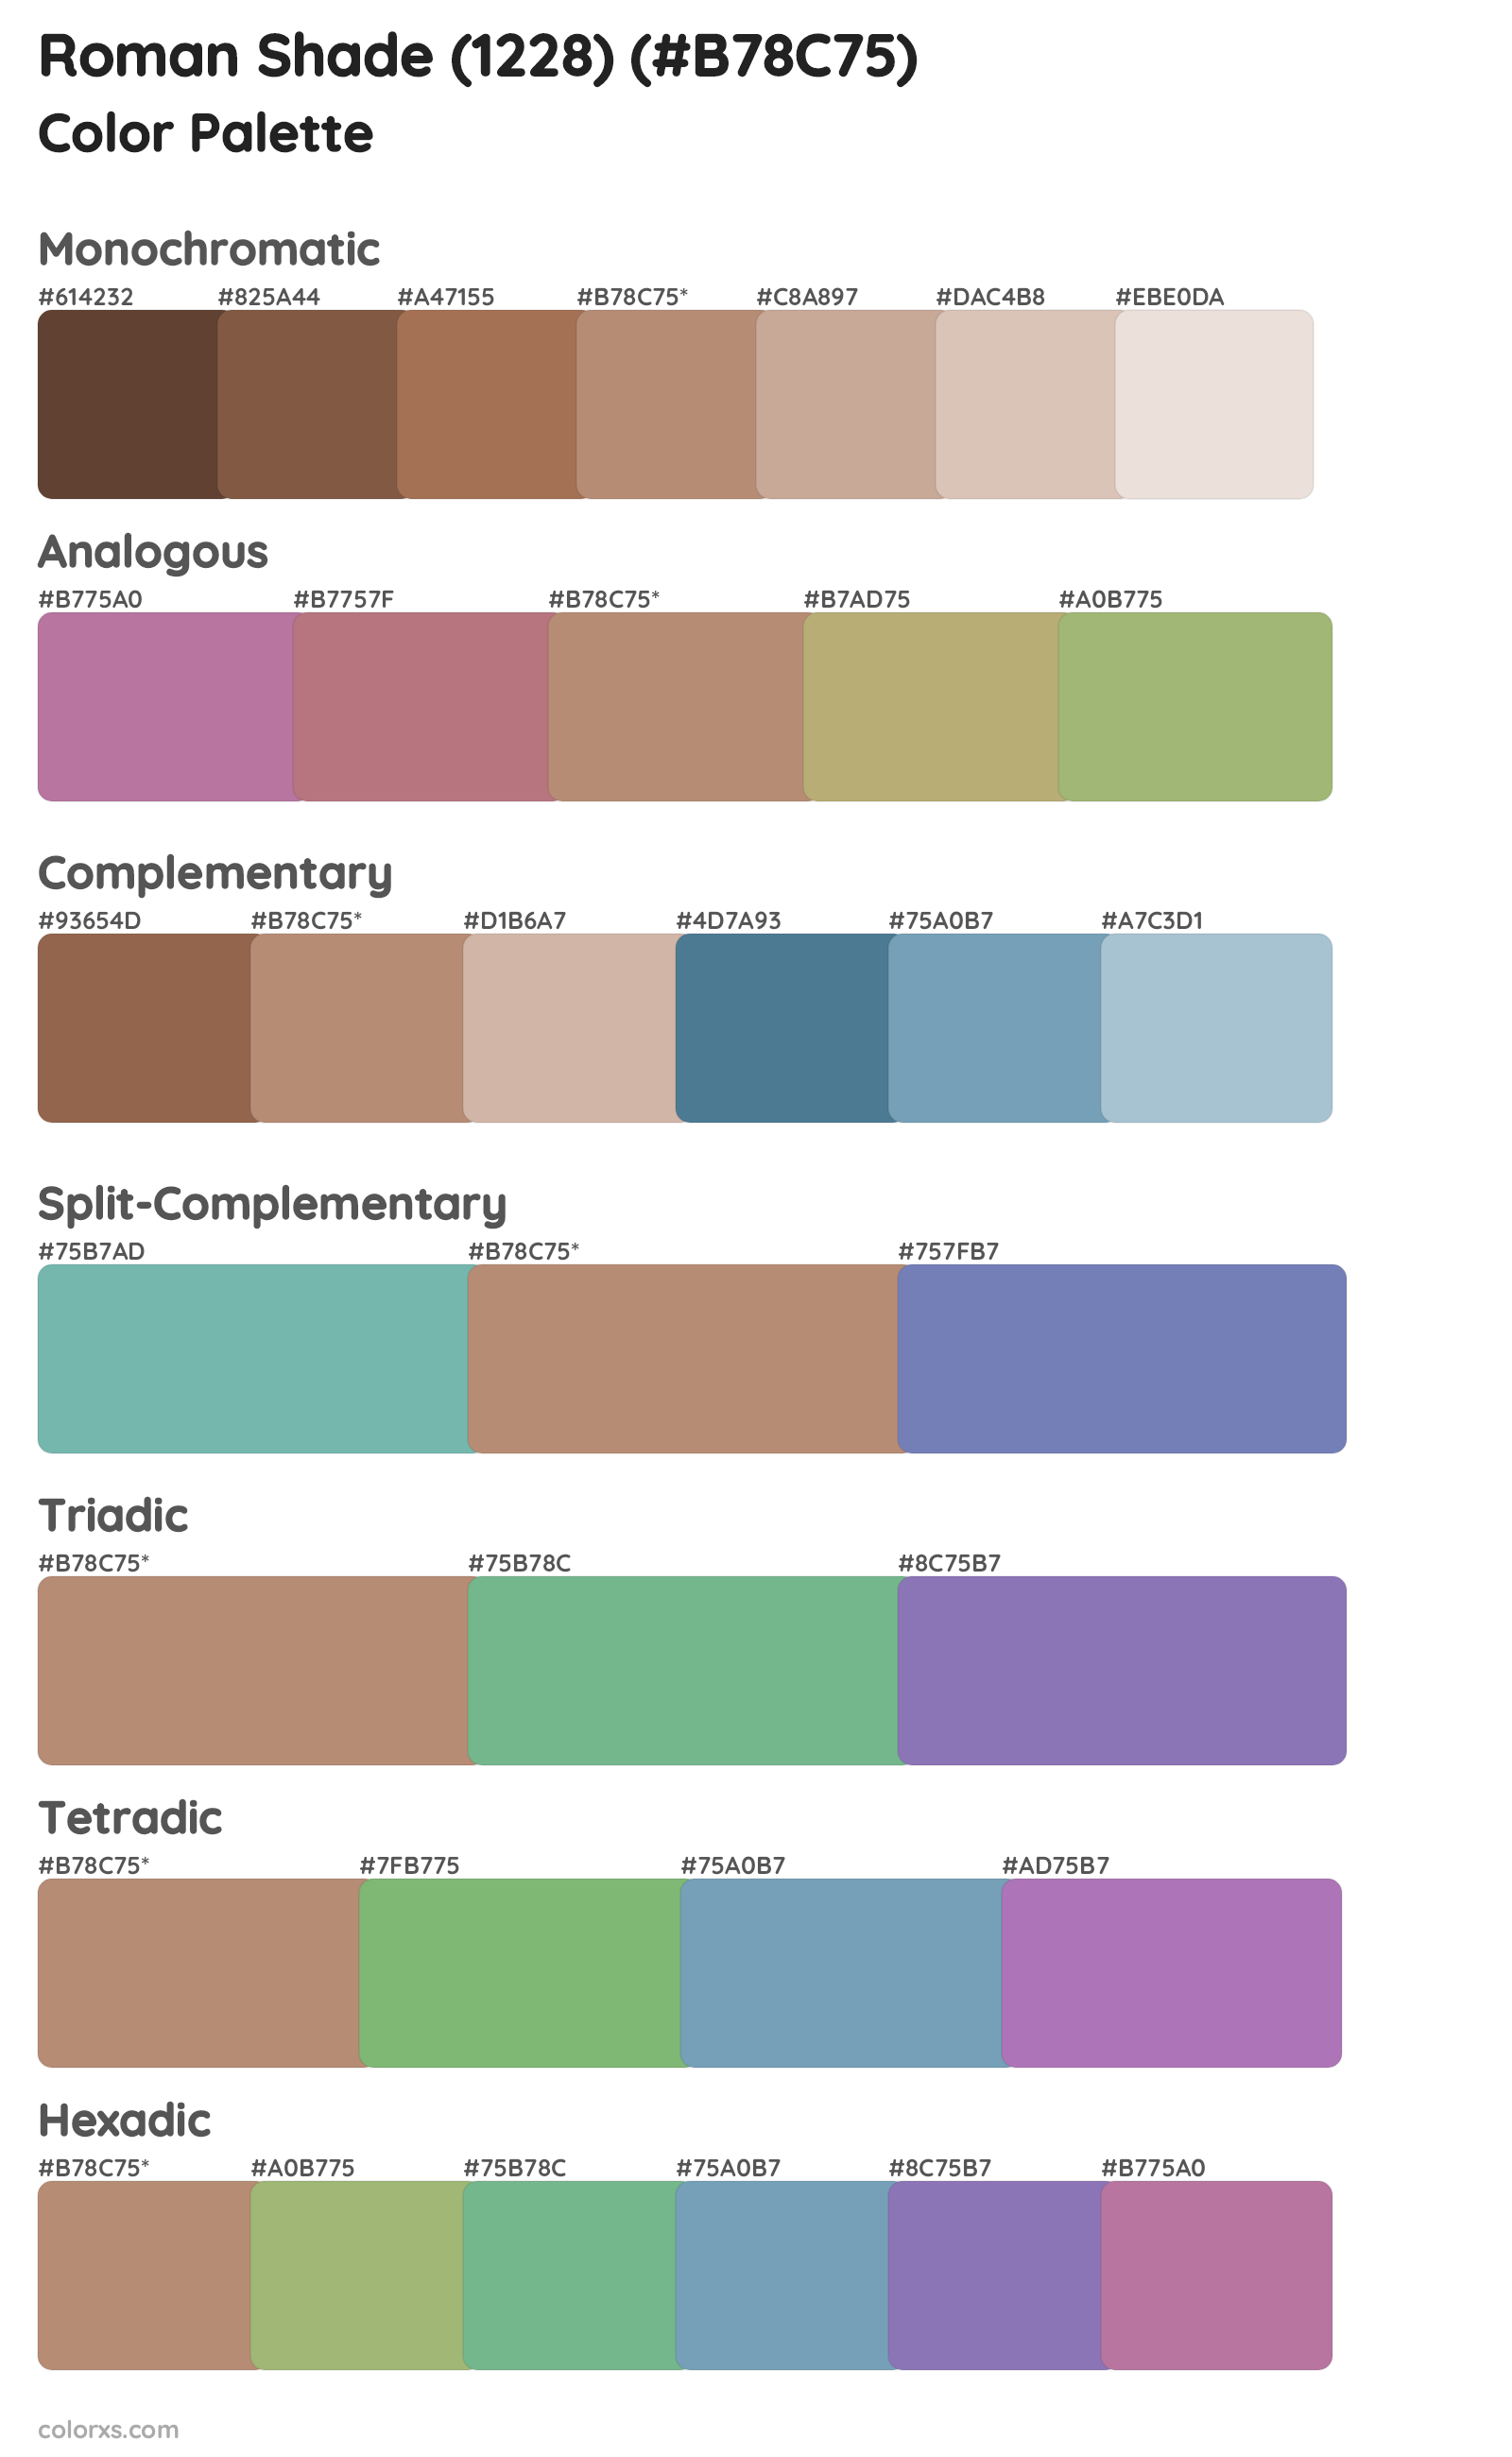 Roman Shade (1228) Color Scheme Palettes